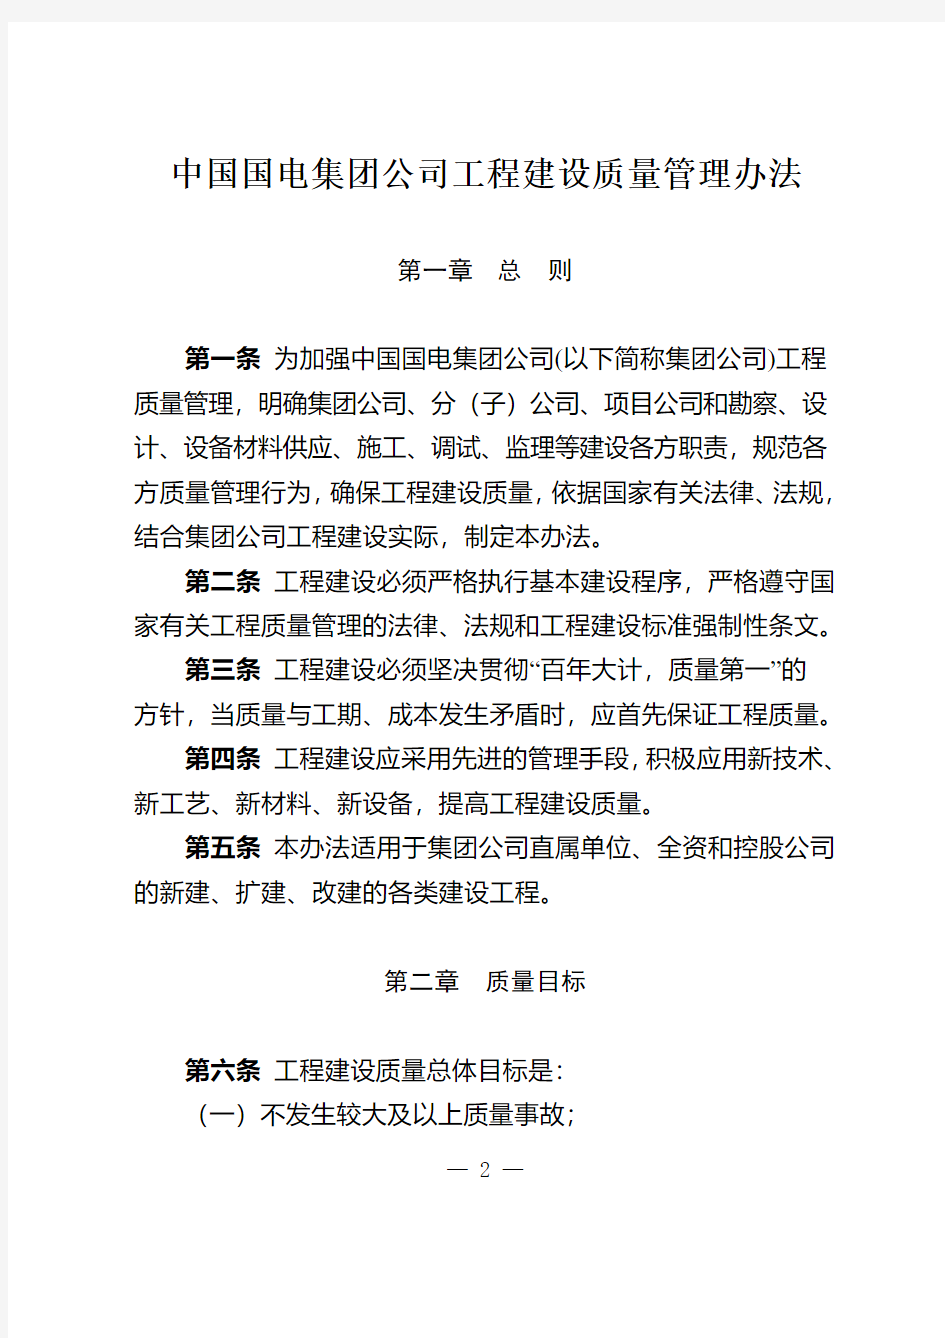 印发《中国国电集团公司工程建设质量管理办法》的通知